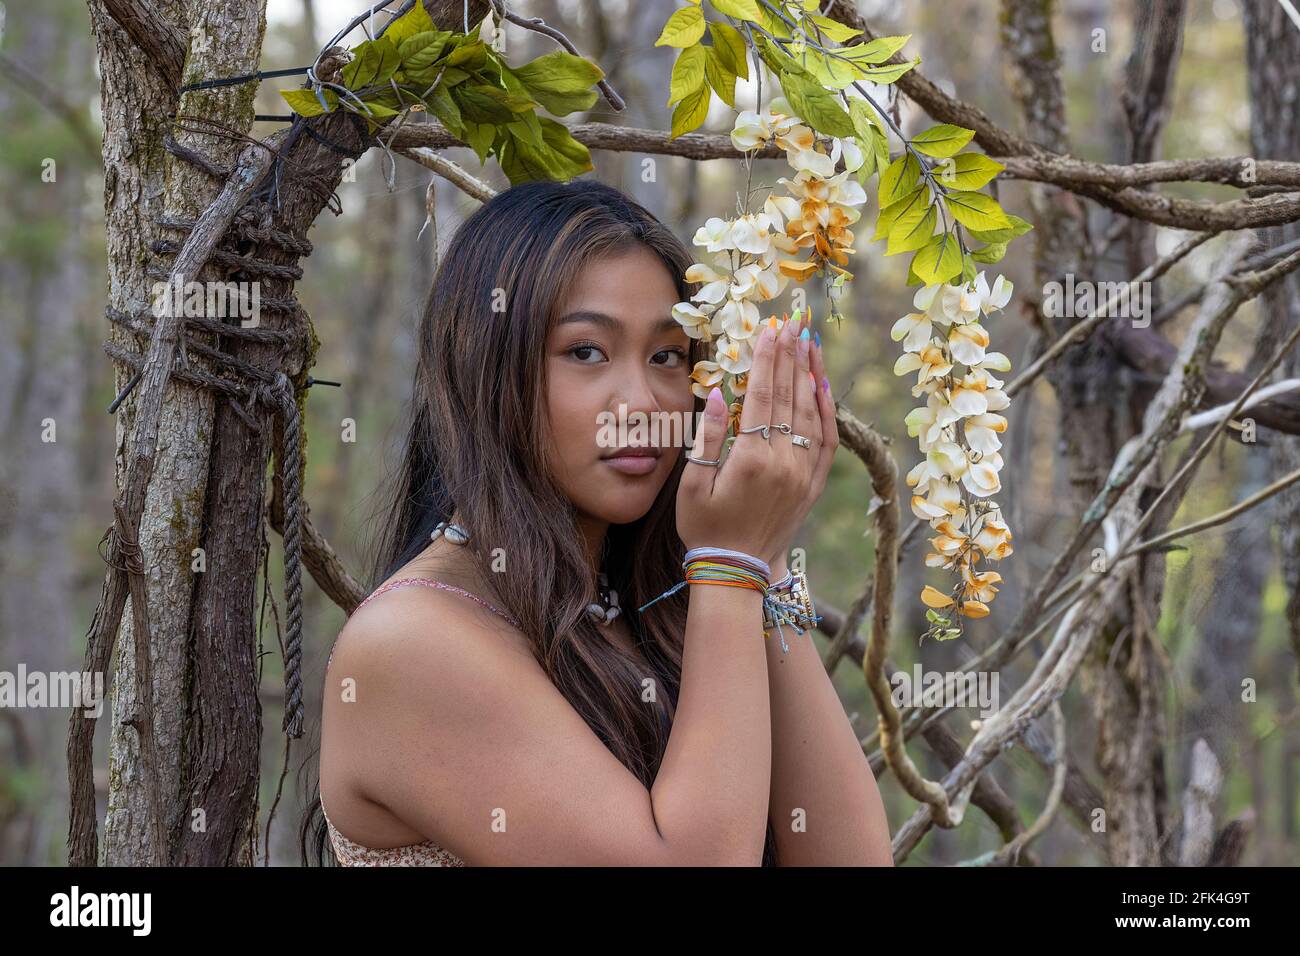 Nahaufnahme einer jungen Frau mit langen braunen Haaren in einer bewaldeten Umgebung, mit Blumen, die an einer Weinrebe hängen Stockfoto